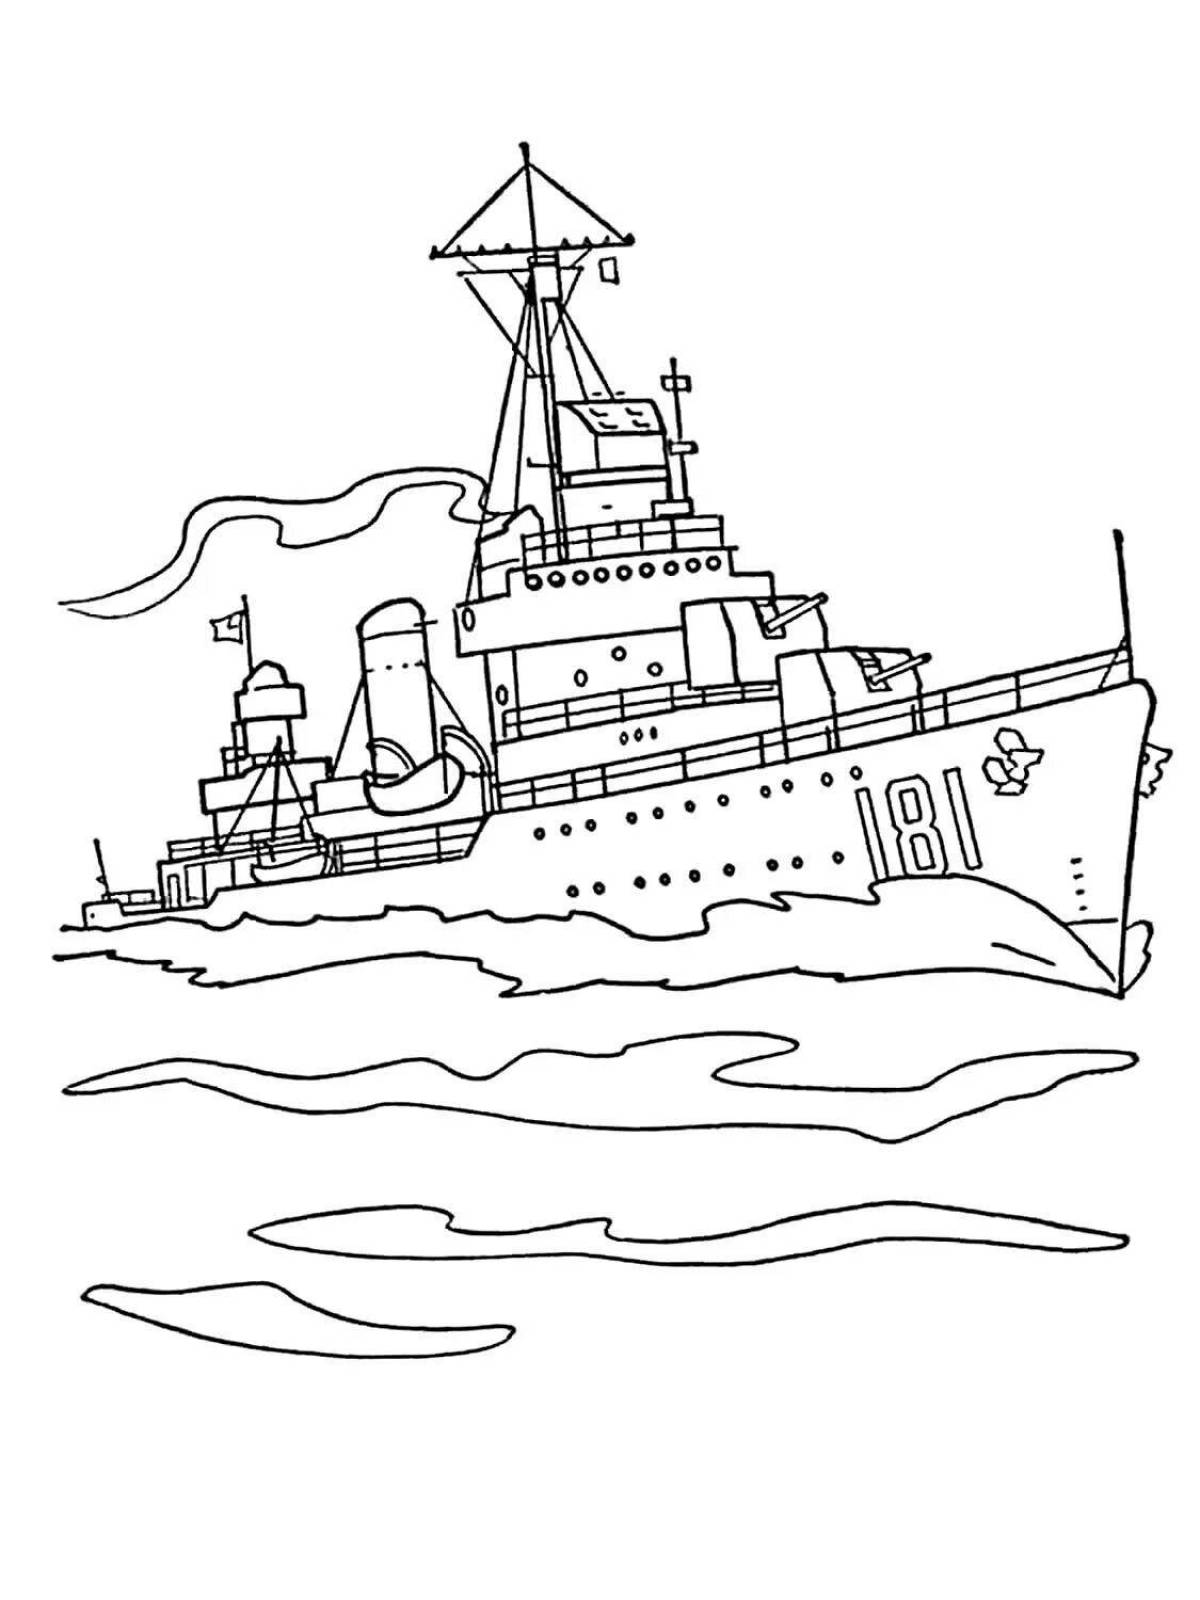 Красочно иллюстрированная страница раскраски военного корабля